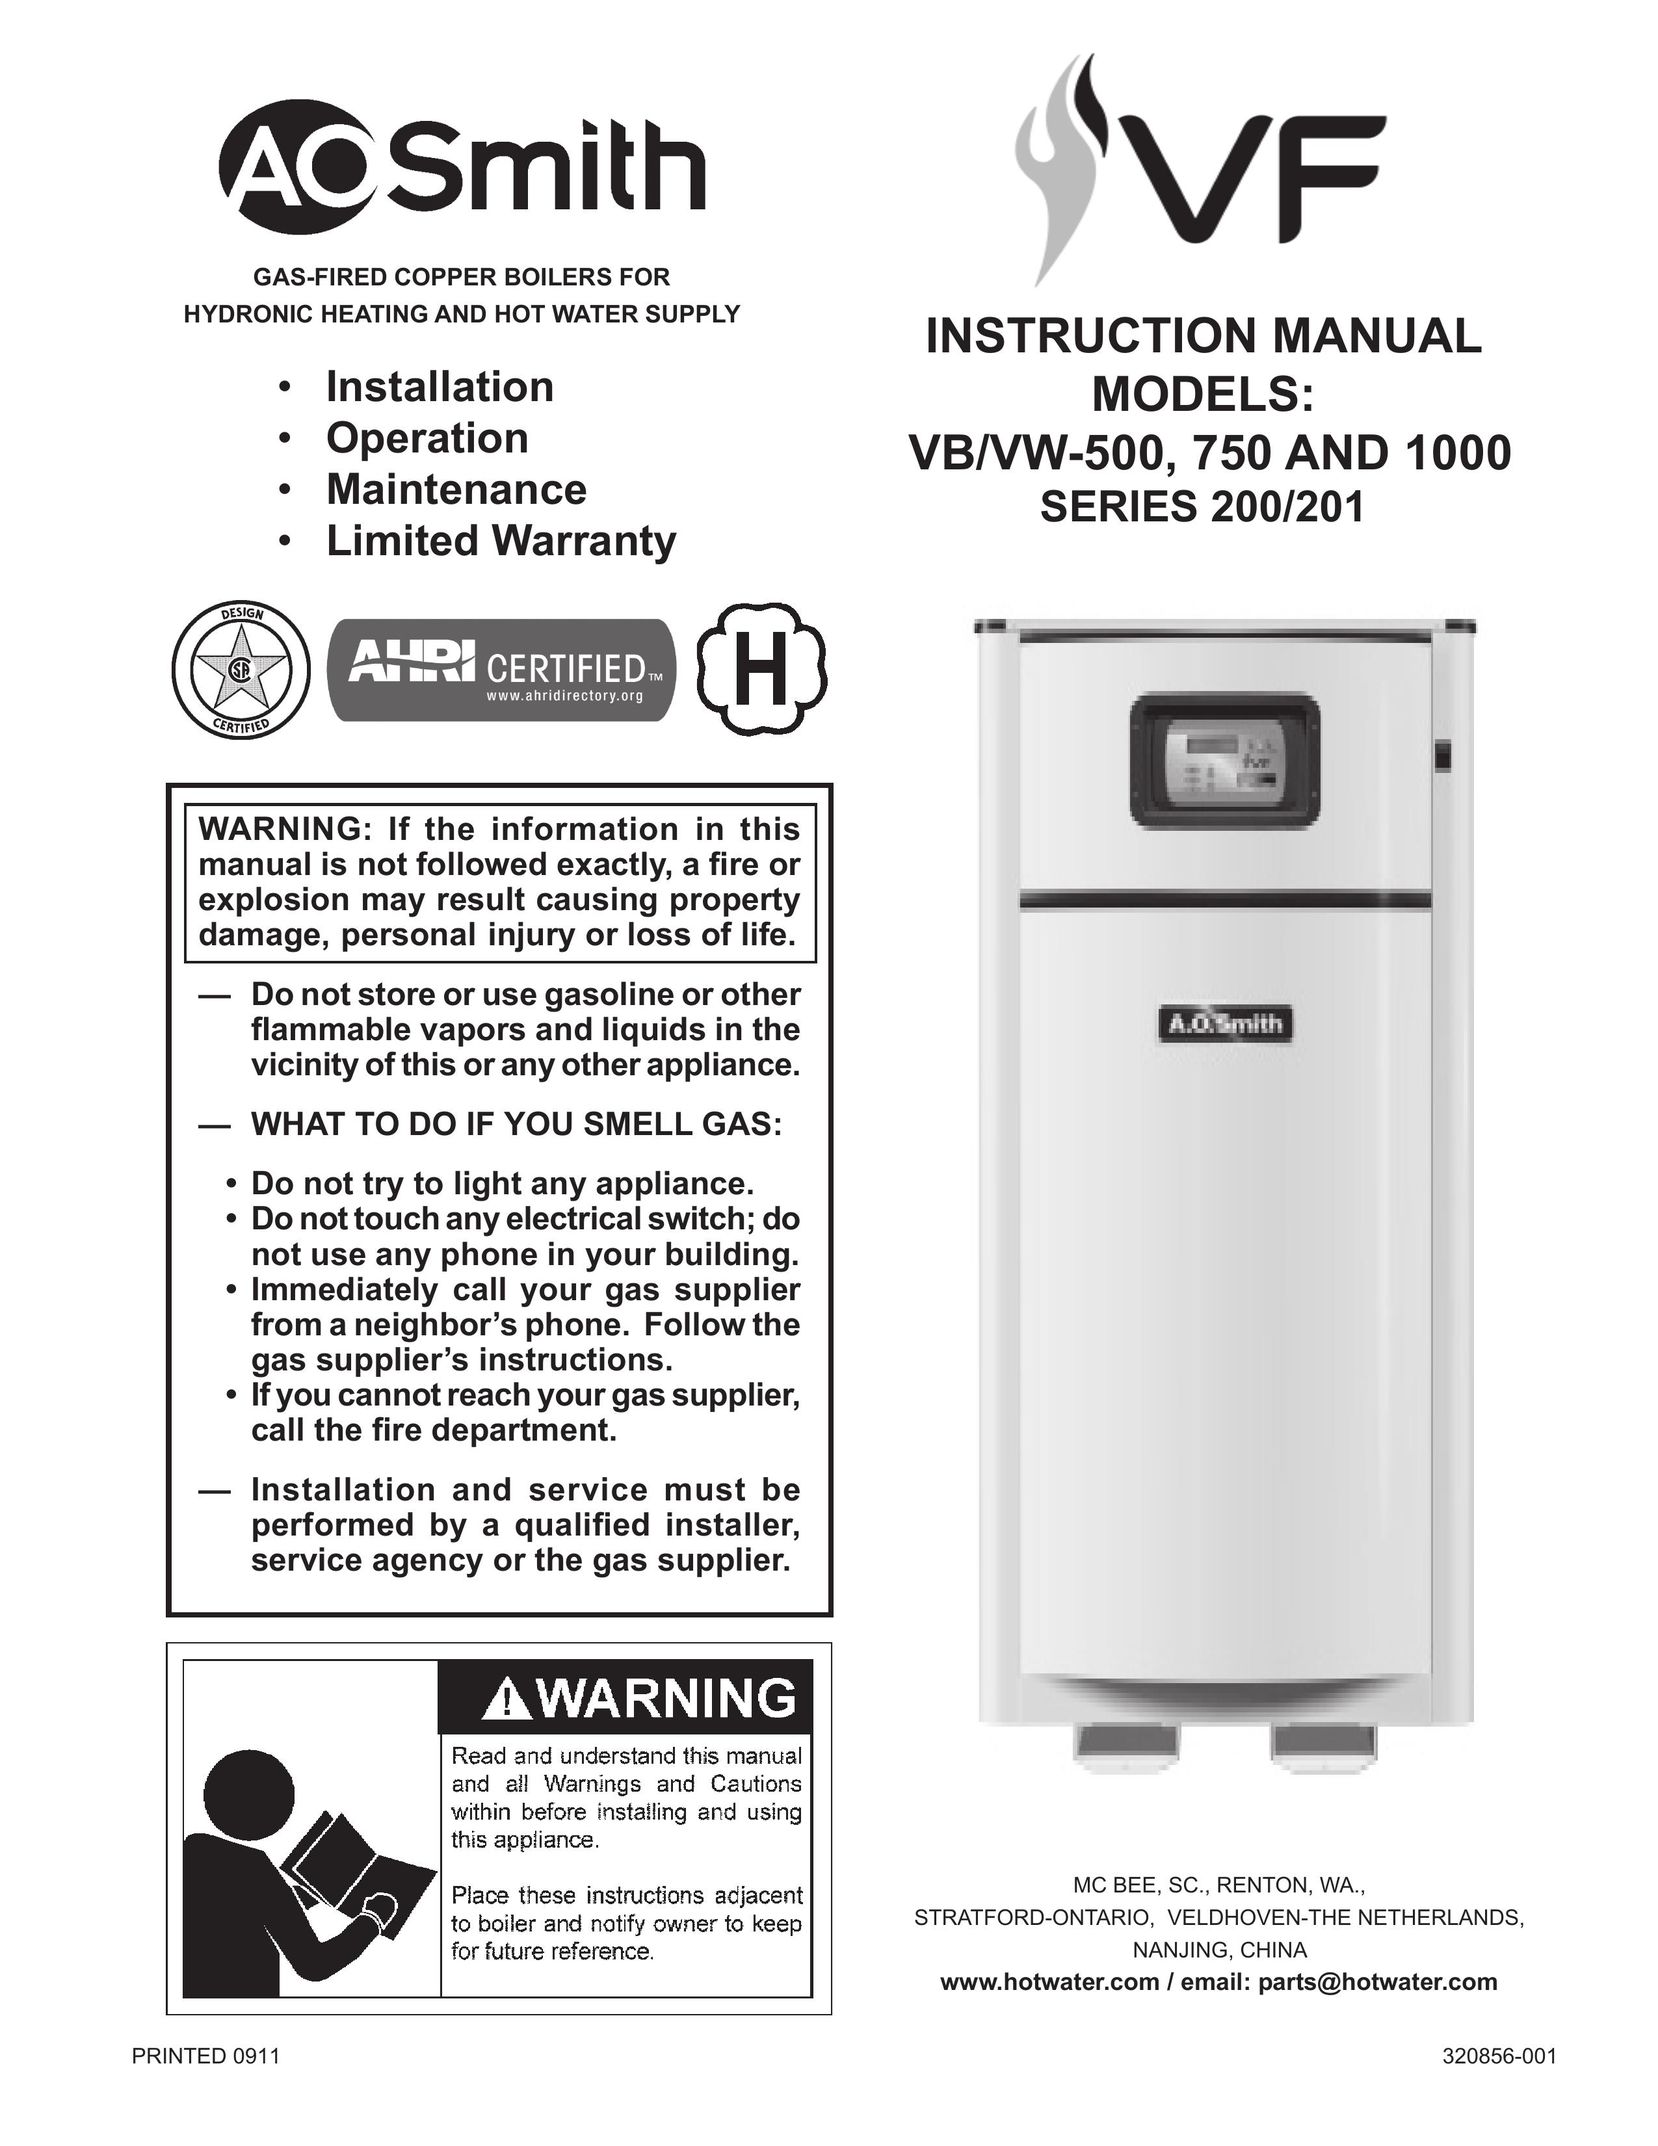 A.O. Smith VB/VW- 1000 Boiler User Manual